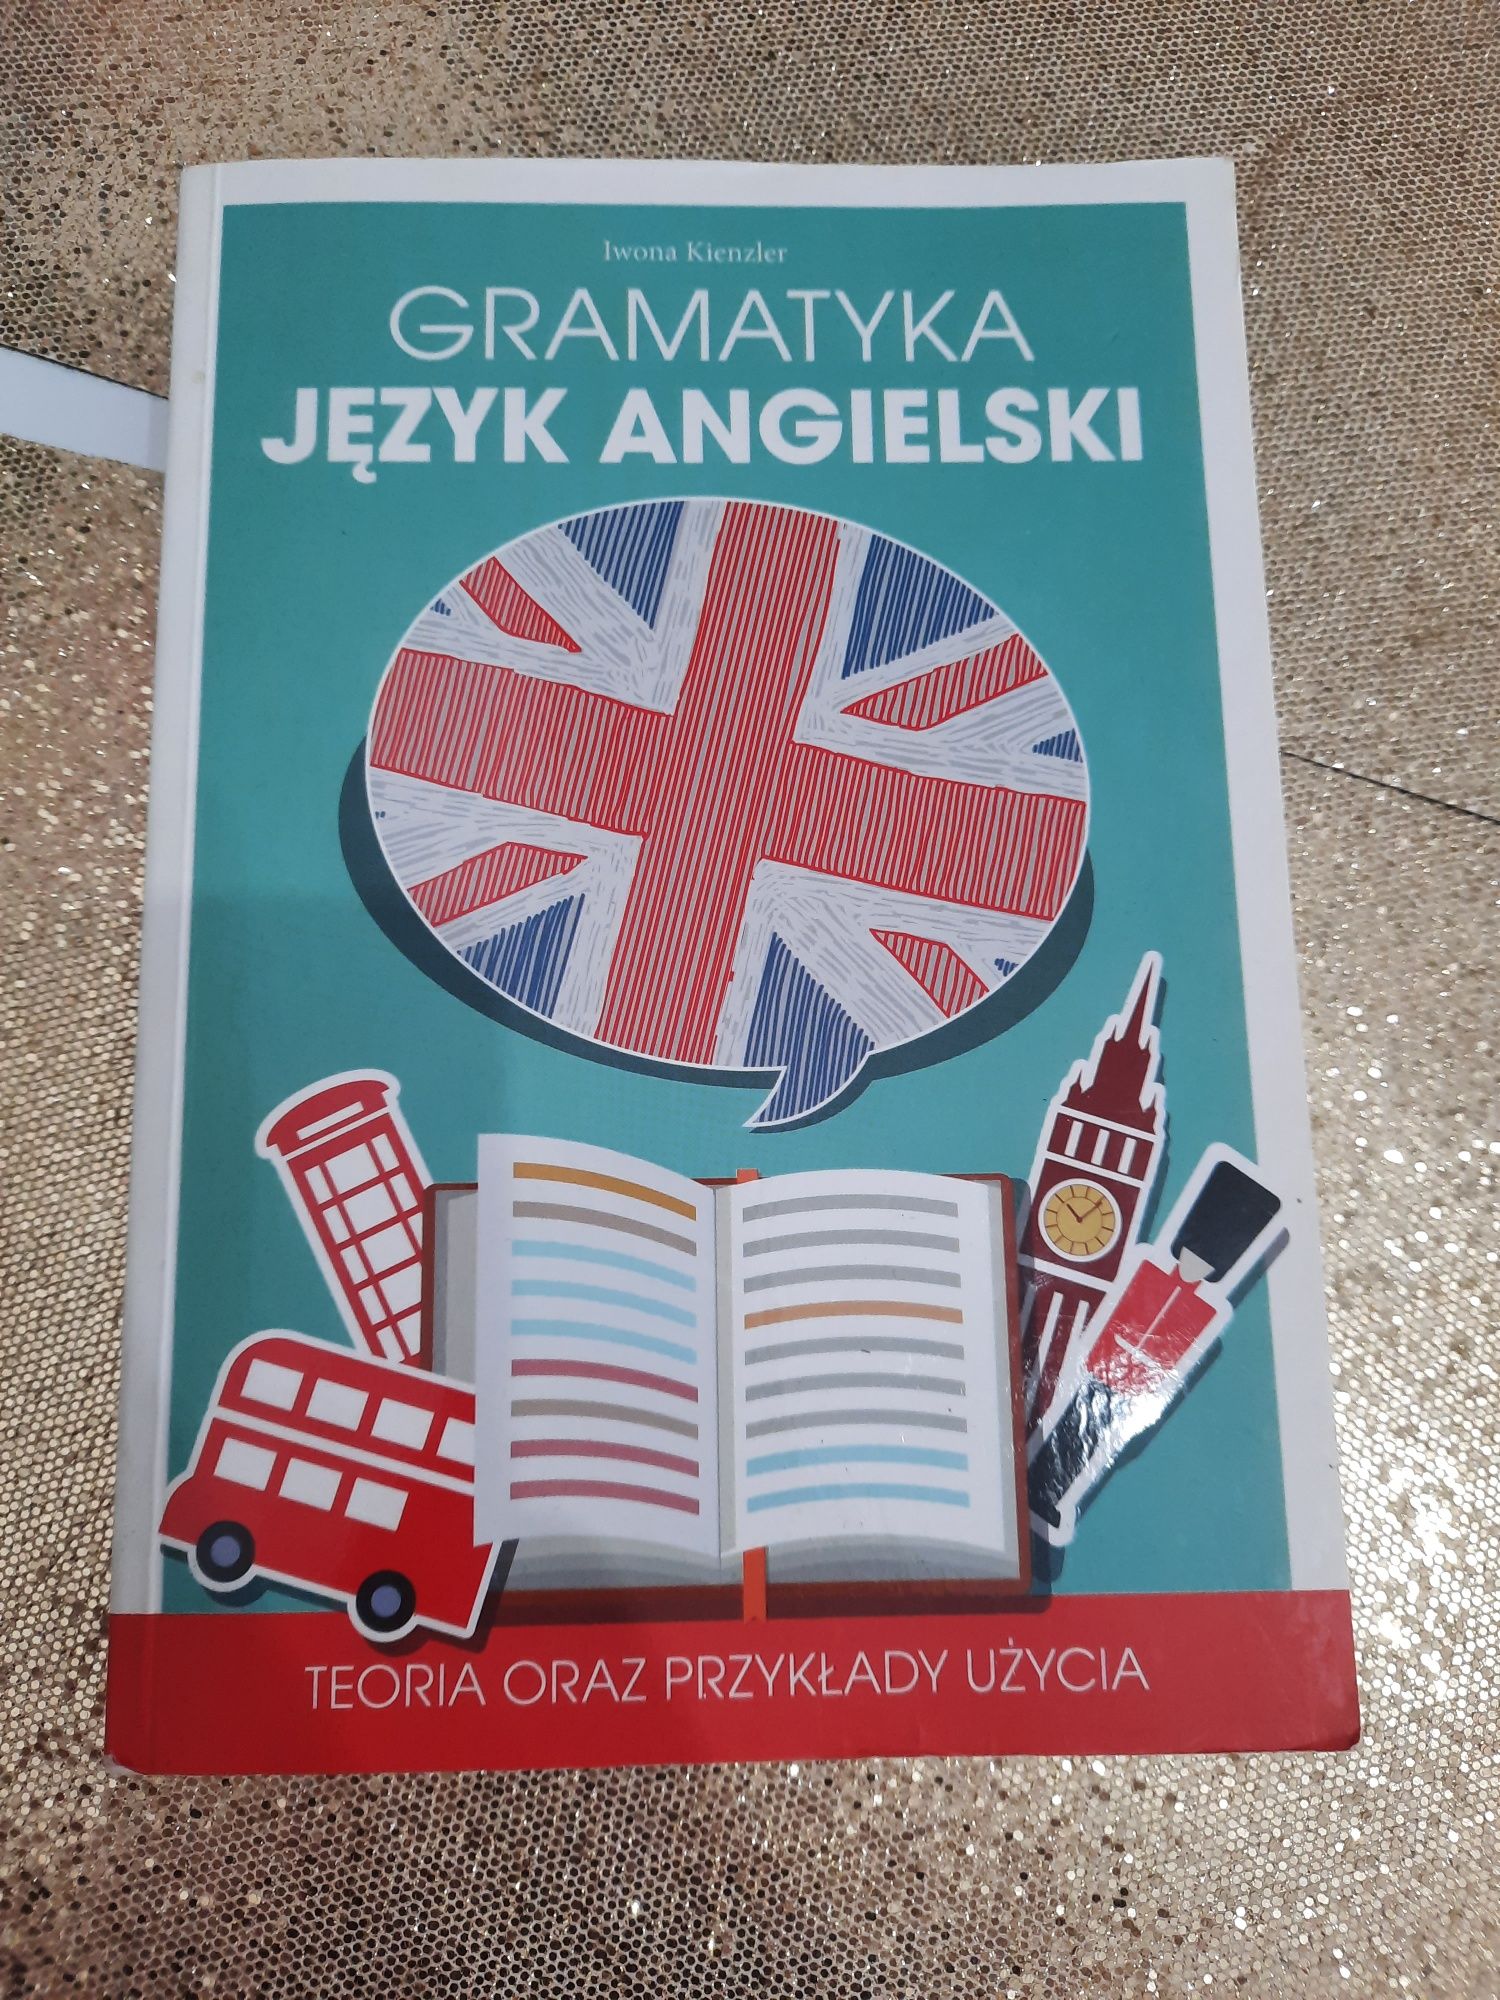 Książka Gramatyka Język Angielski